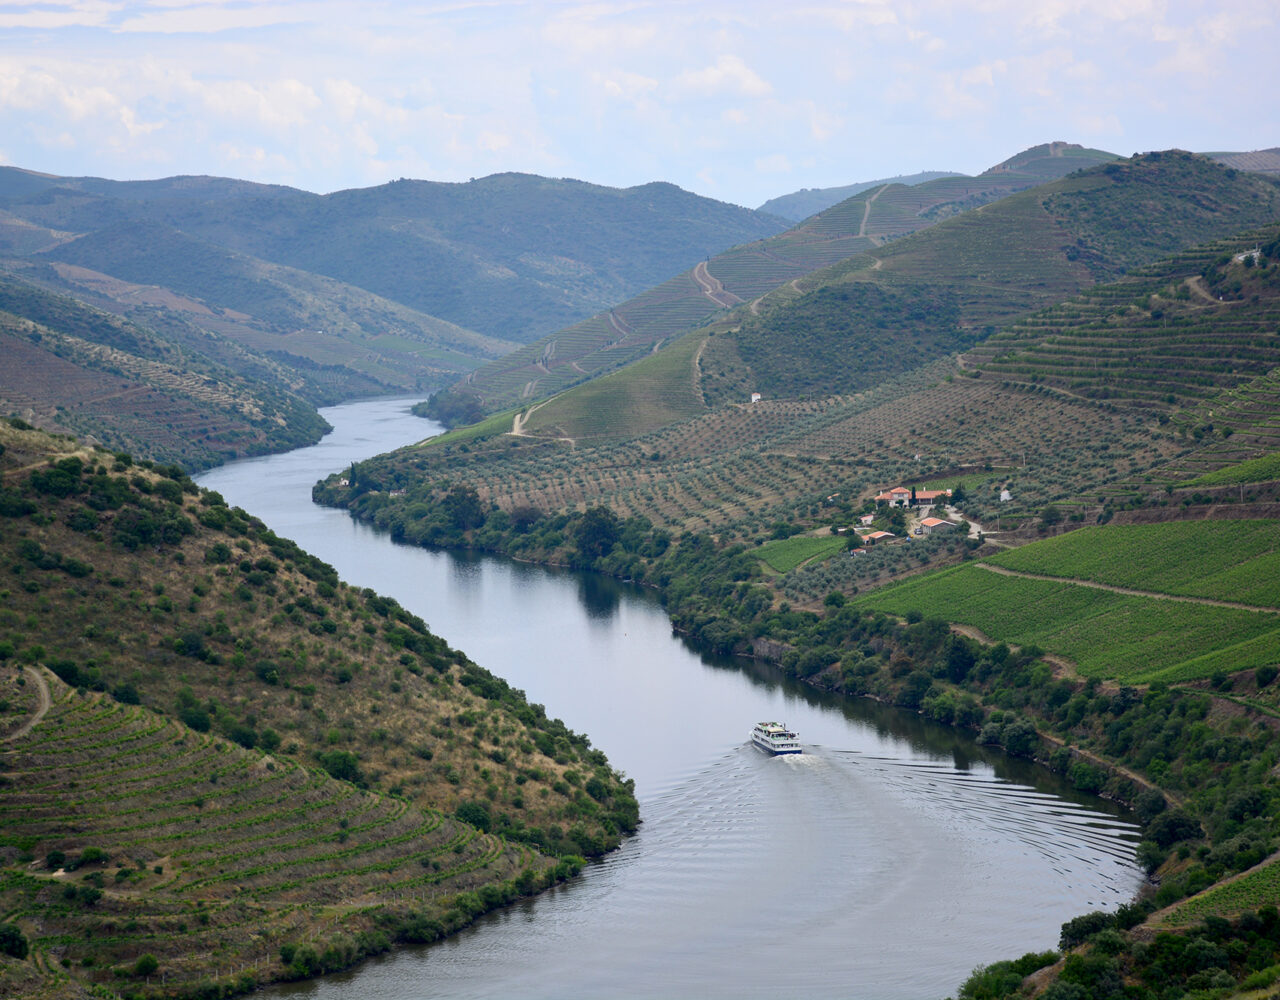 Vinhos e azeites no Douro: quatro dias na DOP mais antiga do mundo